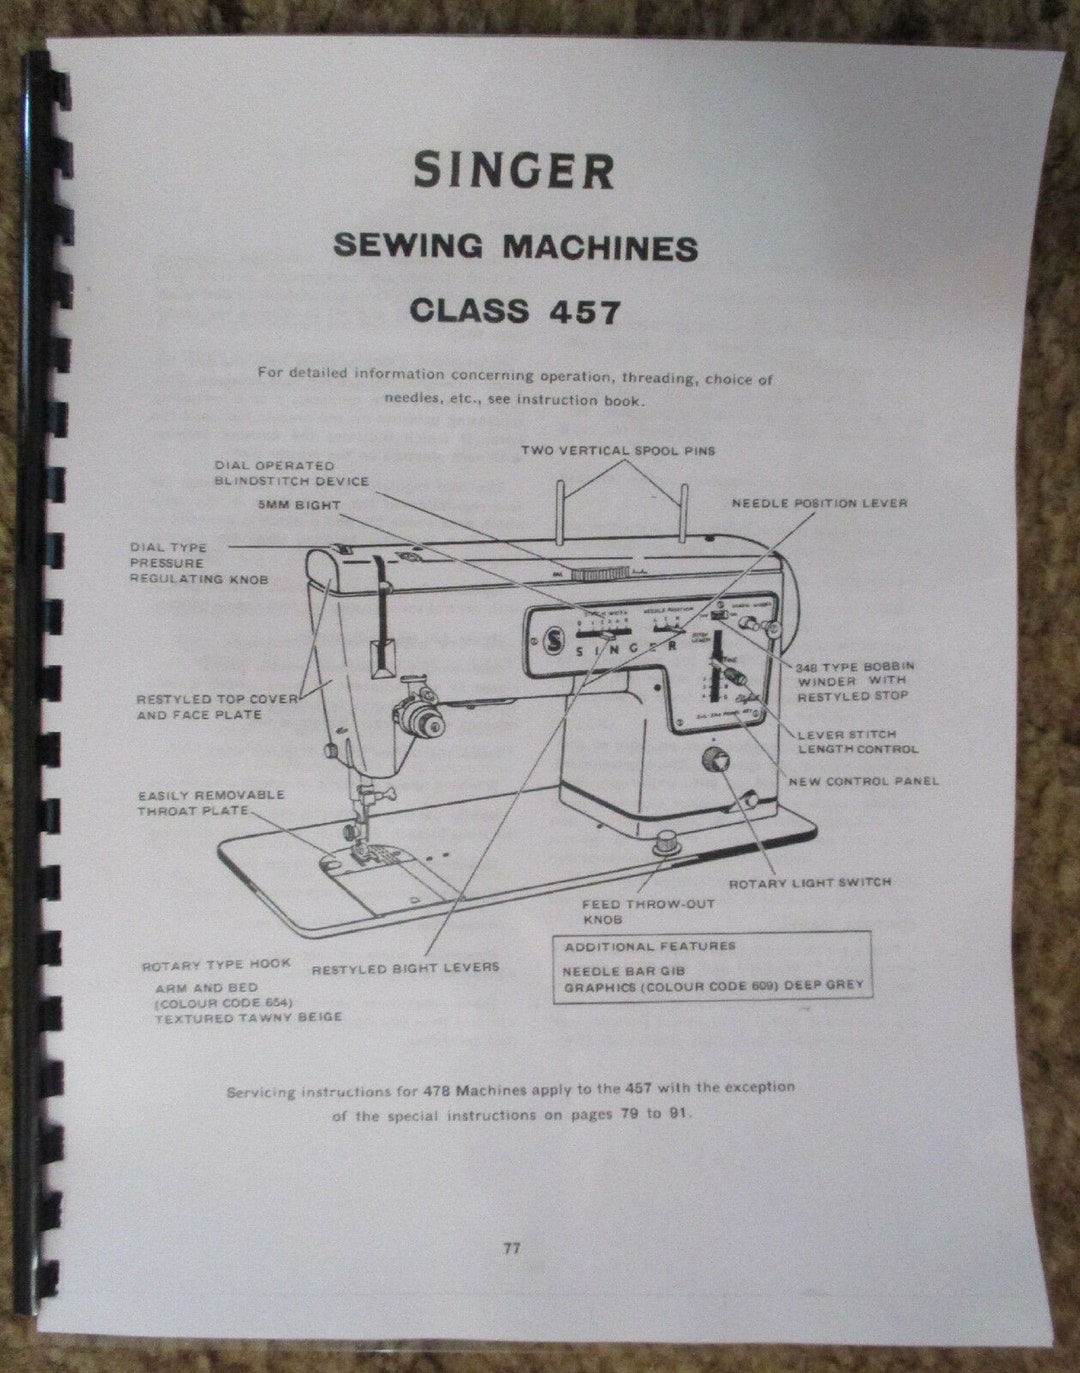 Máquina de coser manual 7 piezas Singer